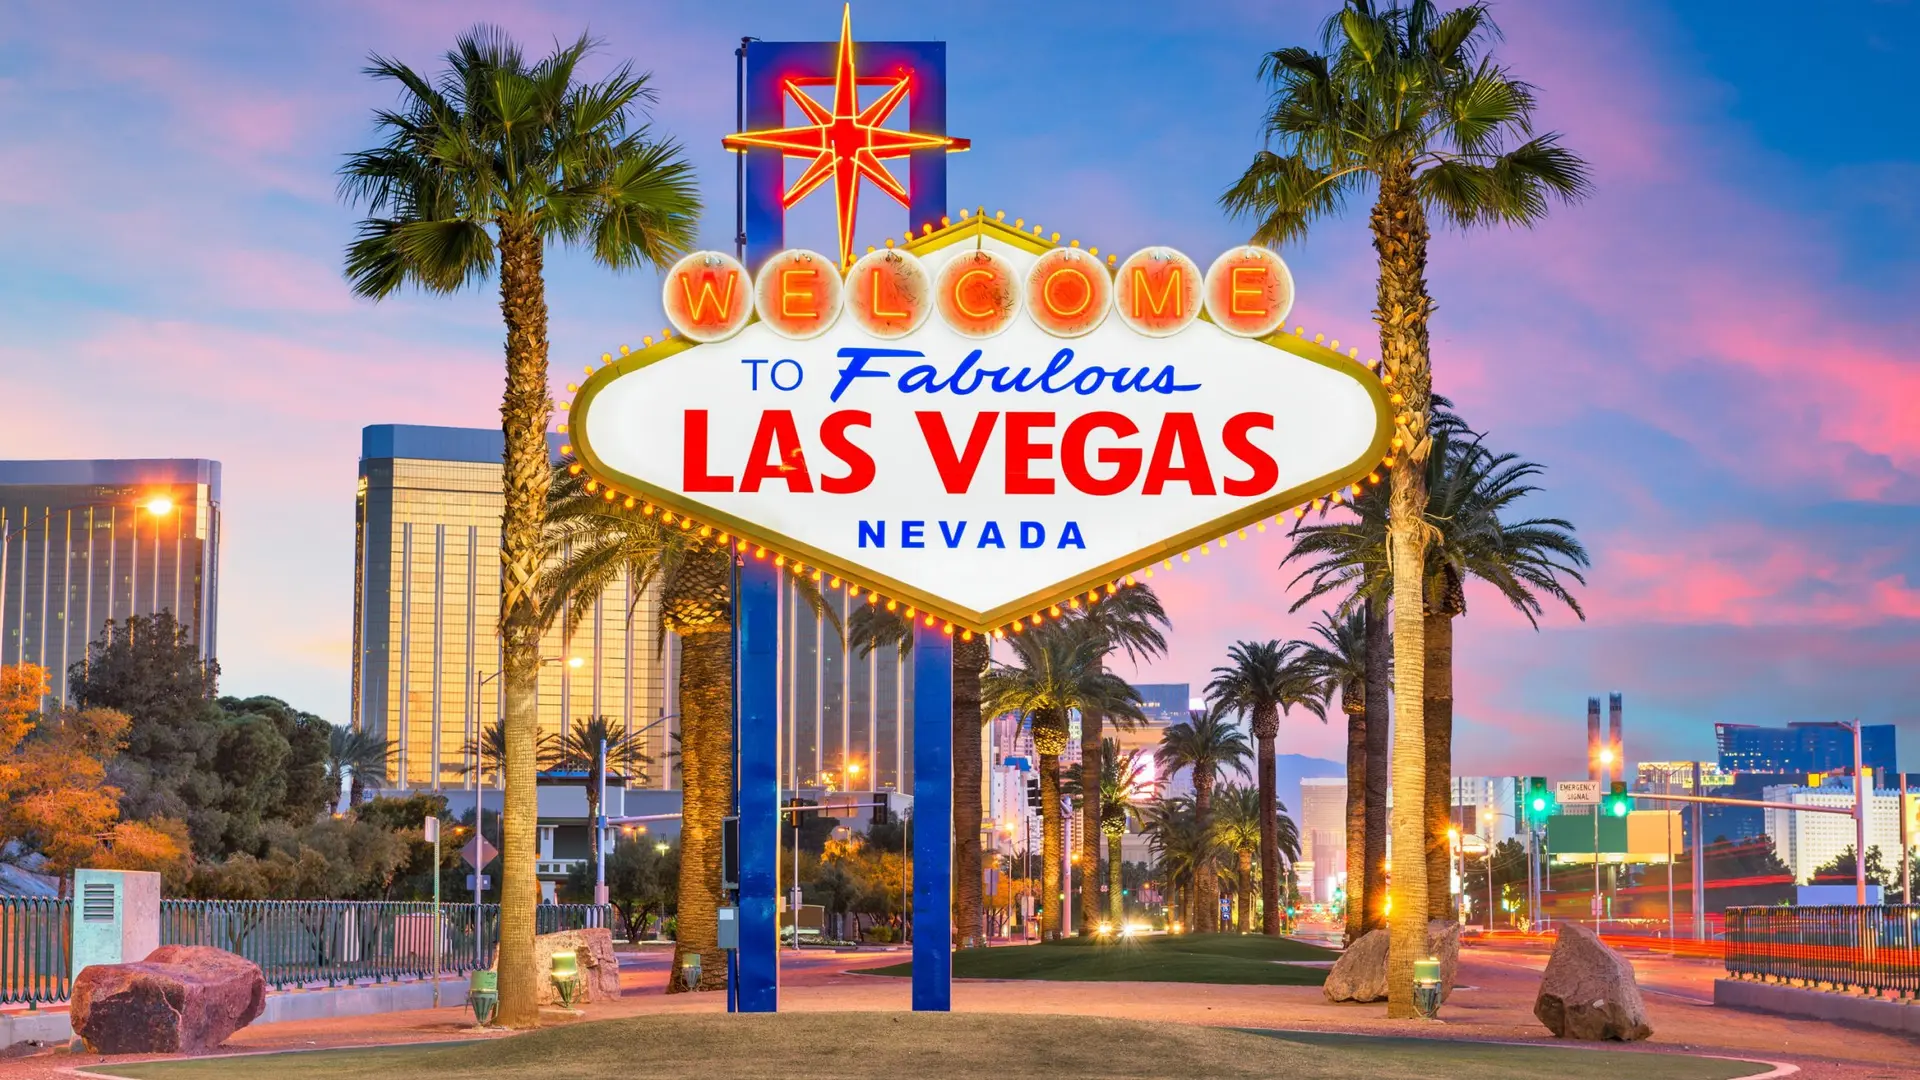 Destinations Articles - Las Vegas Travel Guide